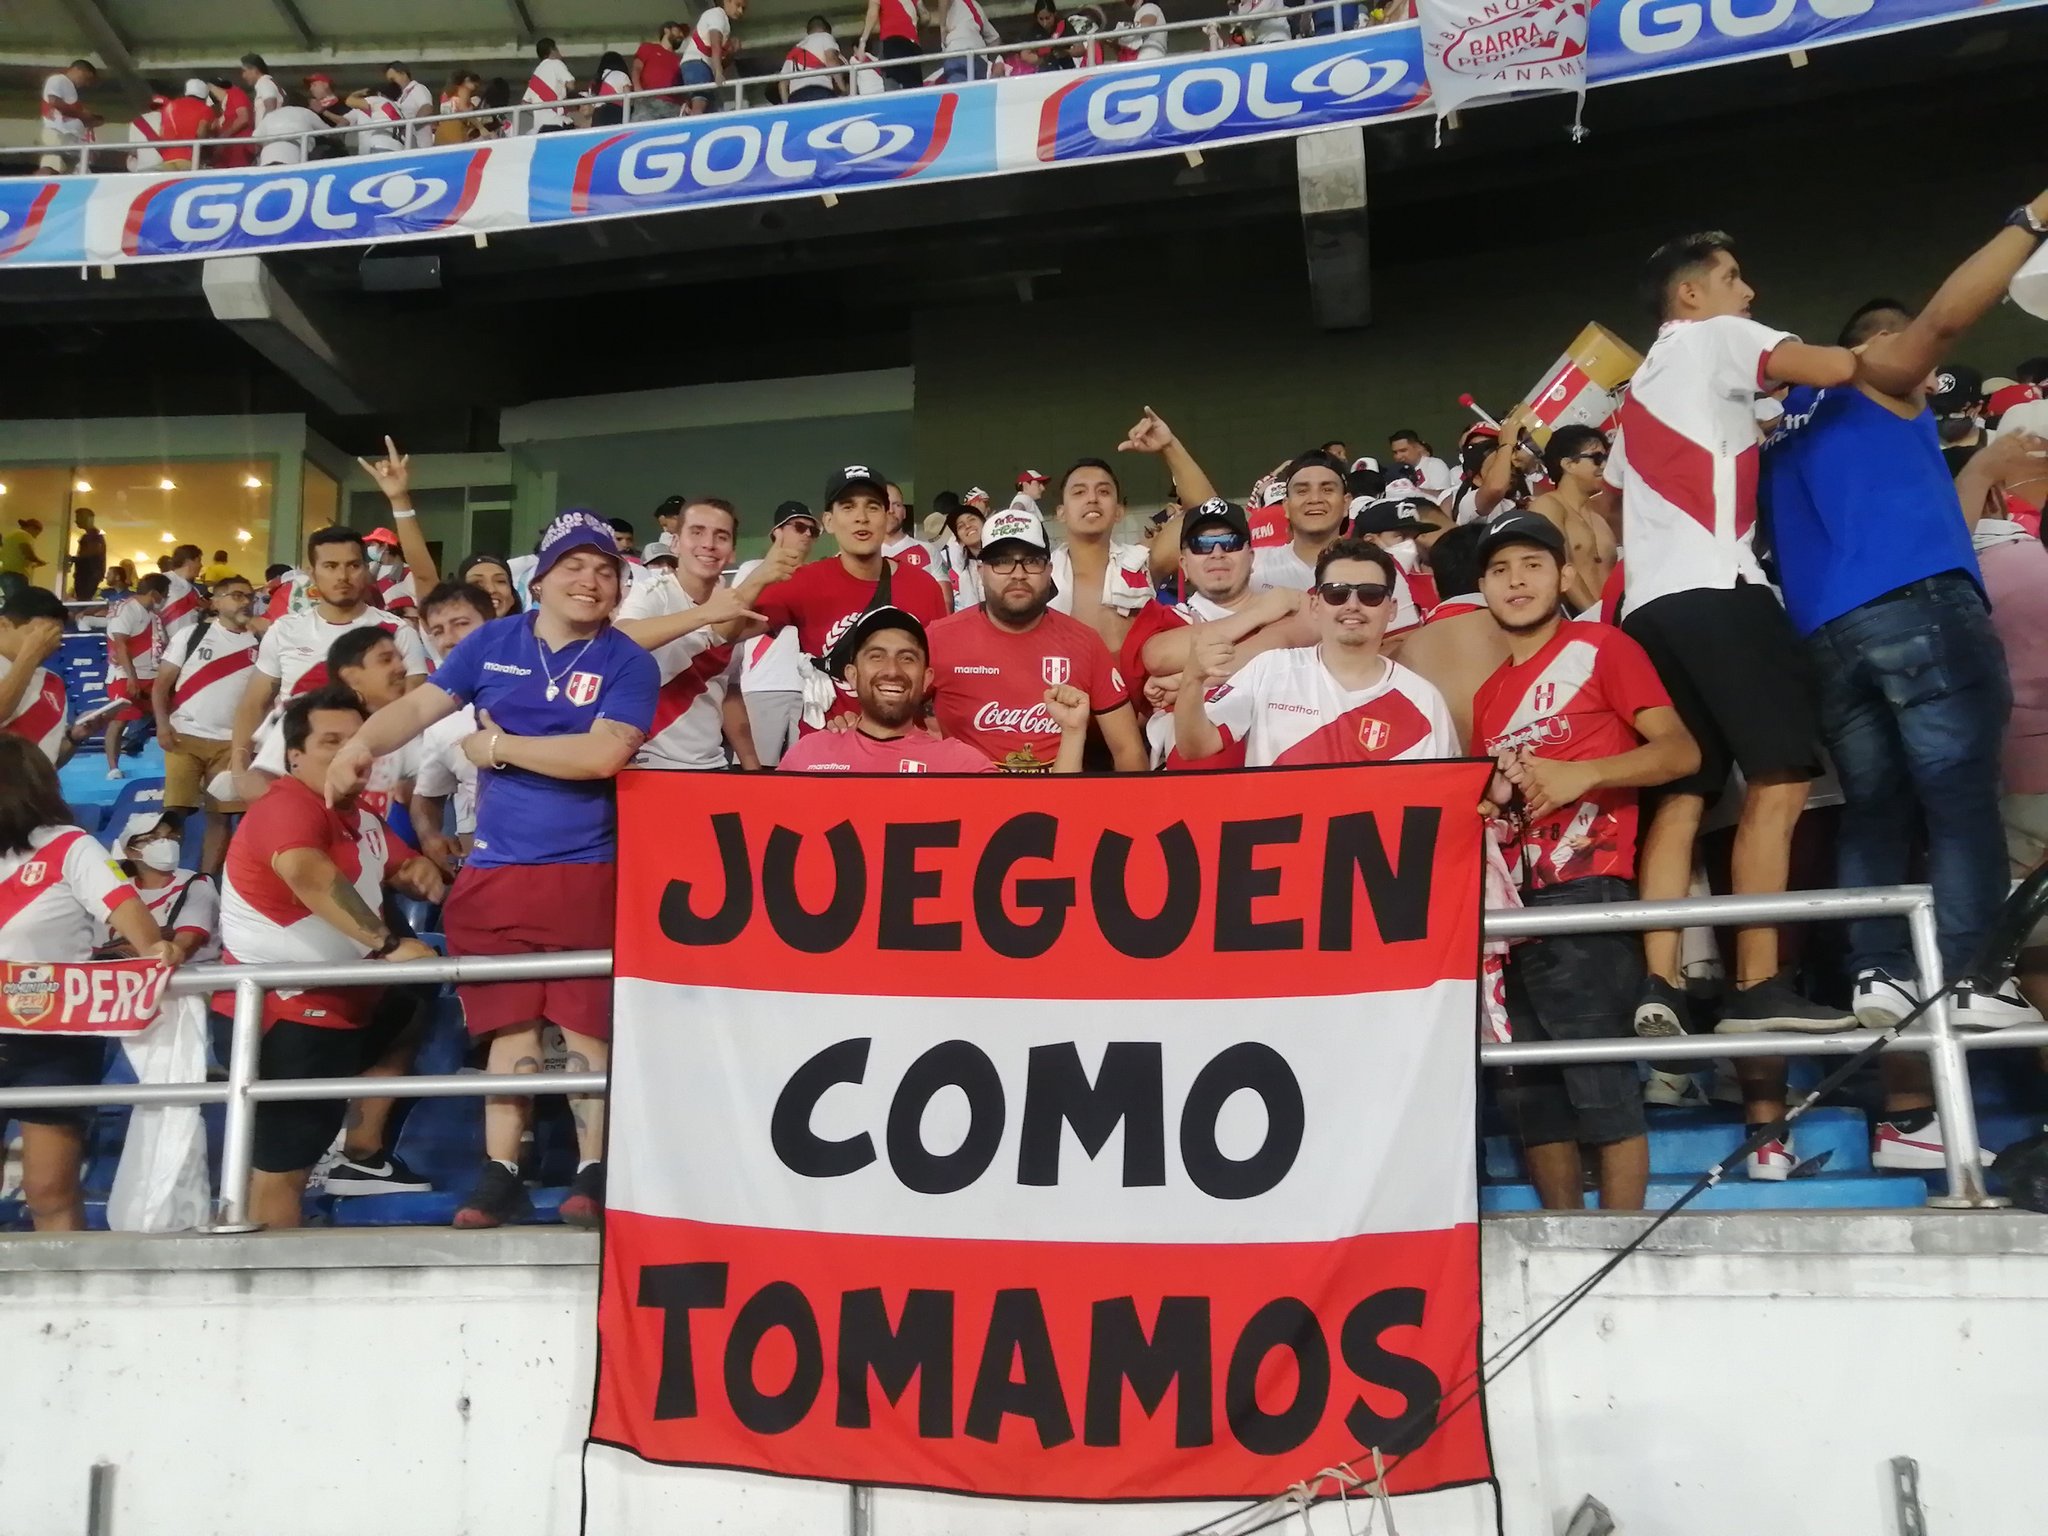 Con la victoria de la bicolor, Perú se ubica en el puesto 4 de las eliminatorias rumbo a Qatar 2022.